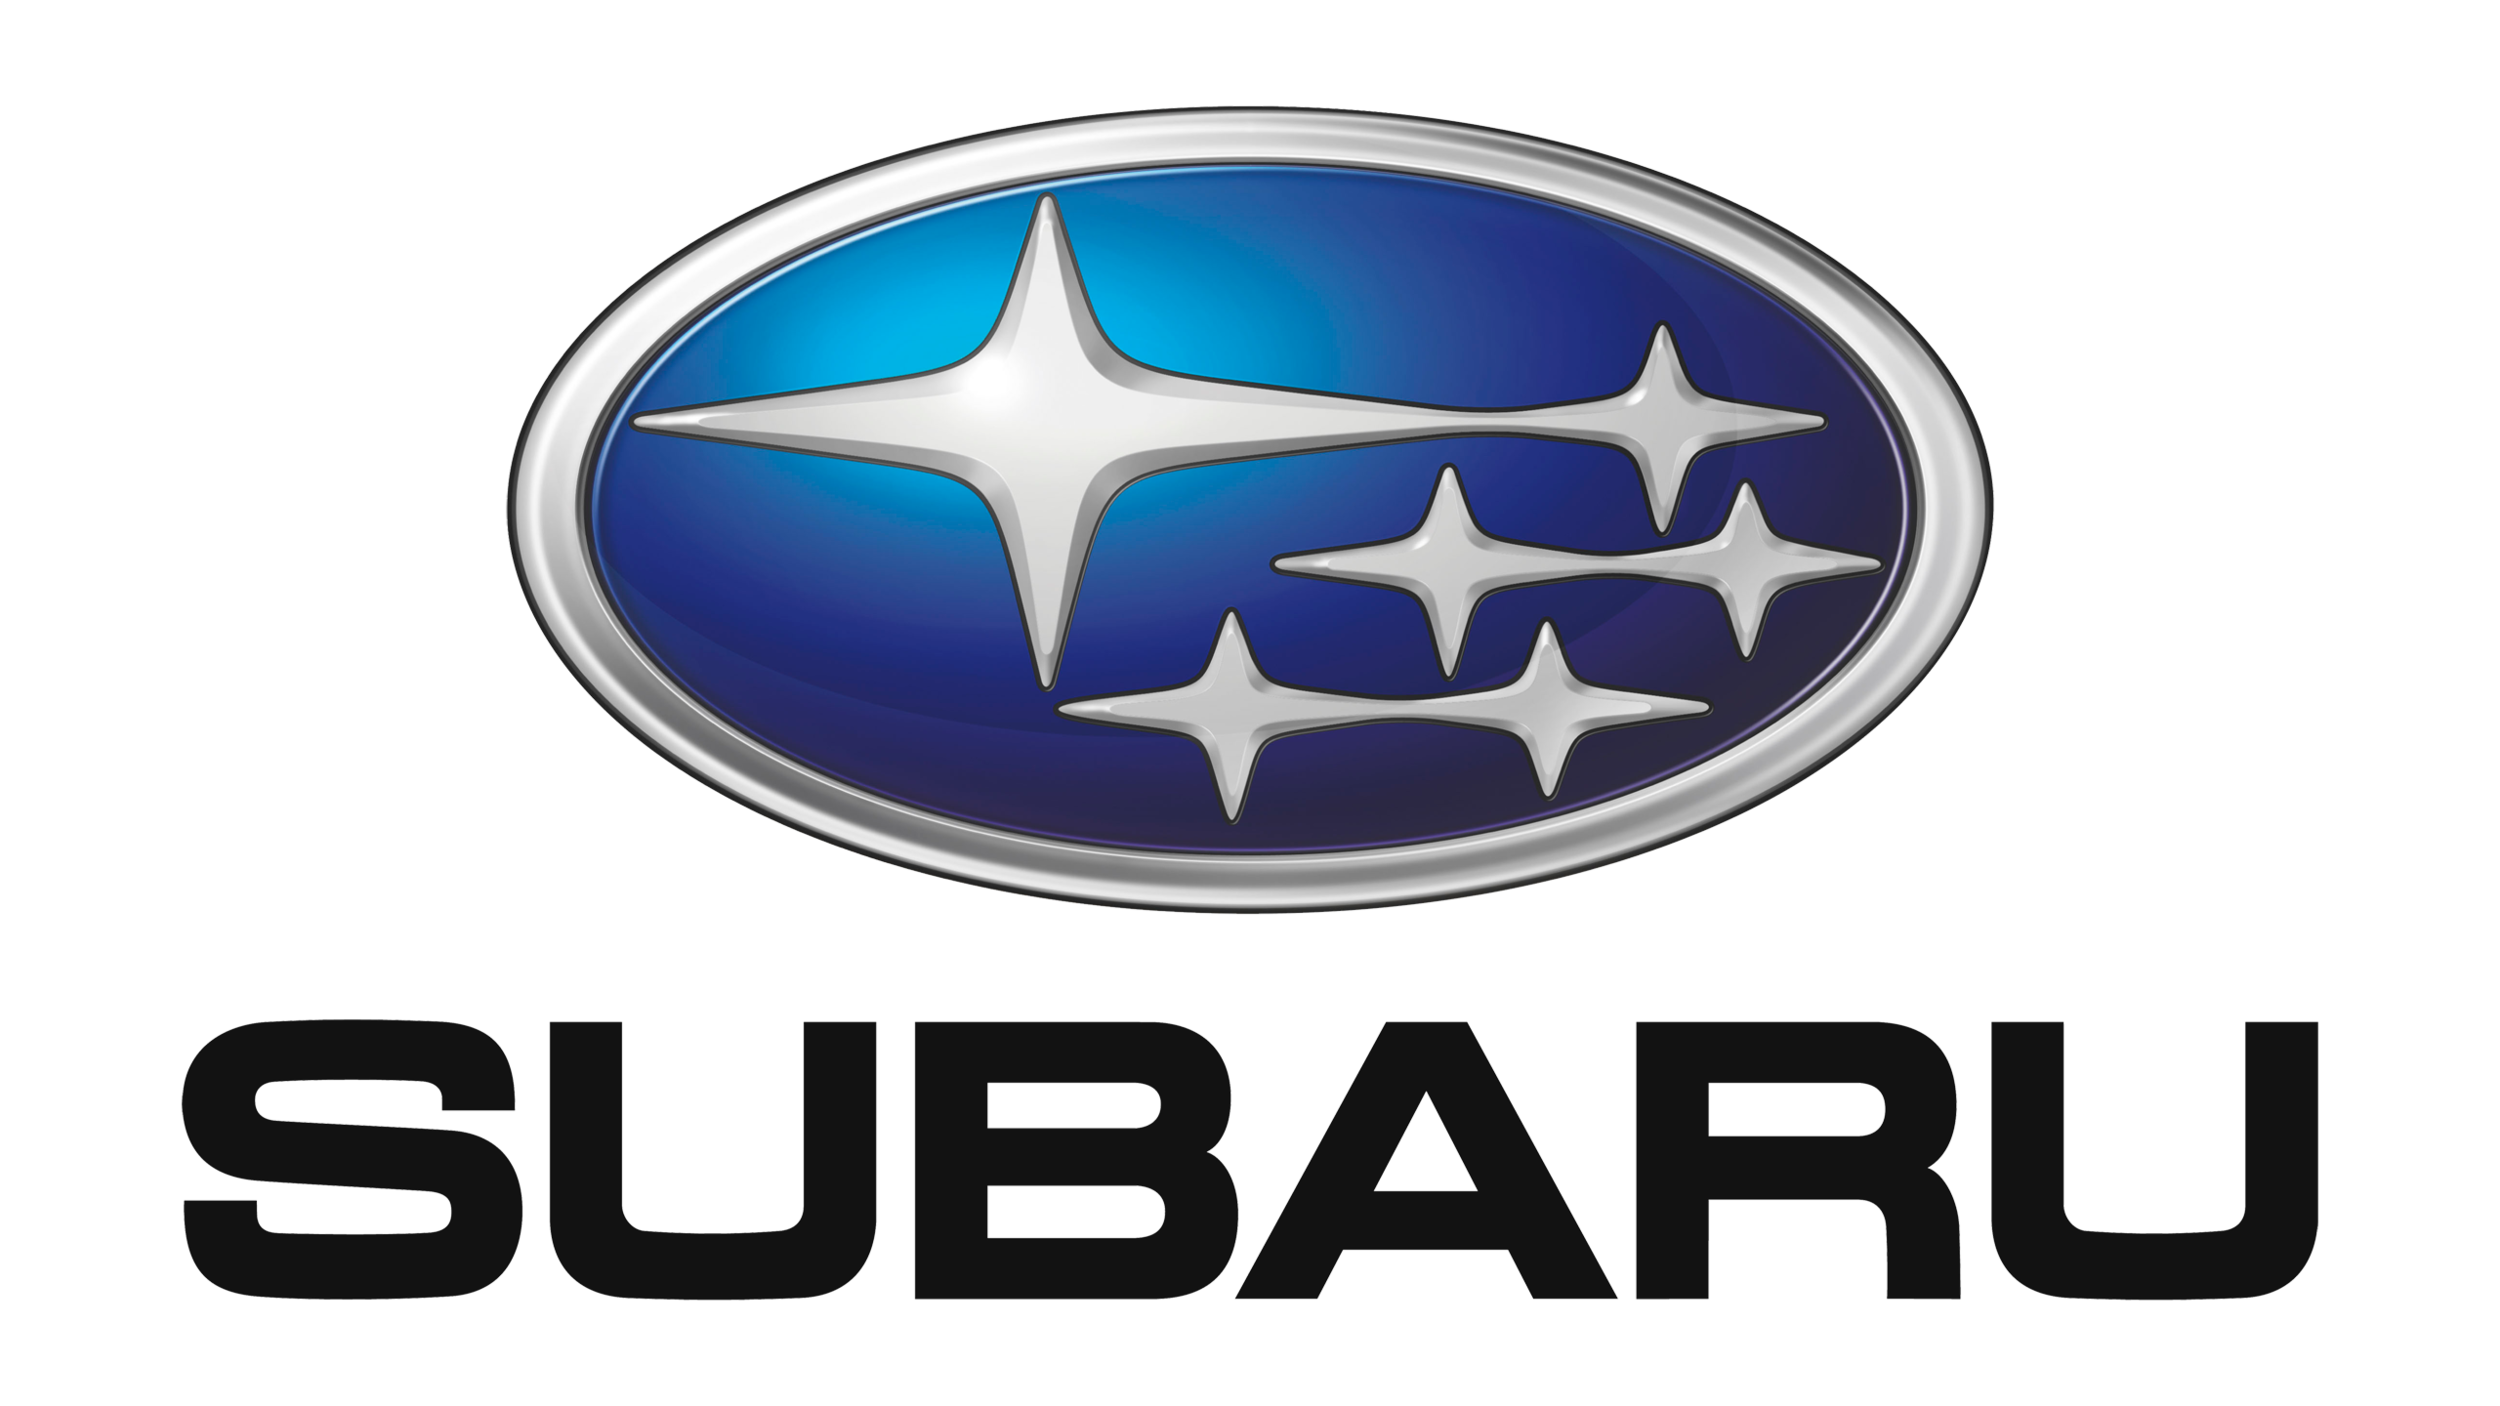 Subaru-logo-2003-2560x1440.png